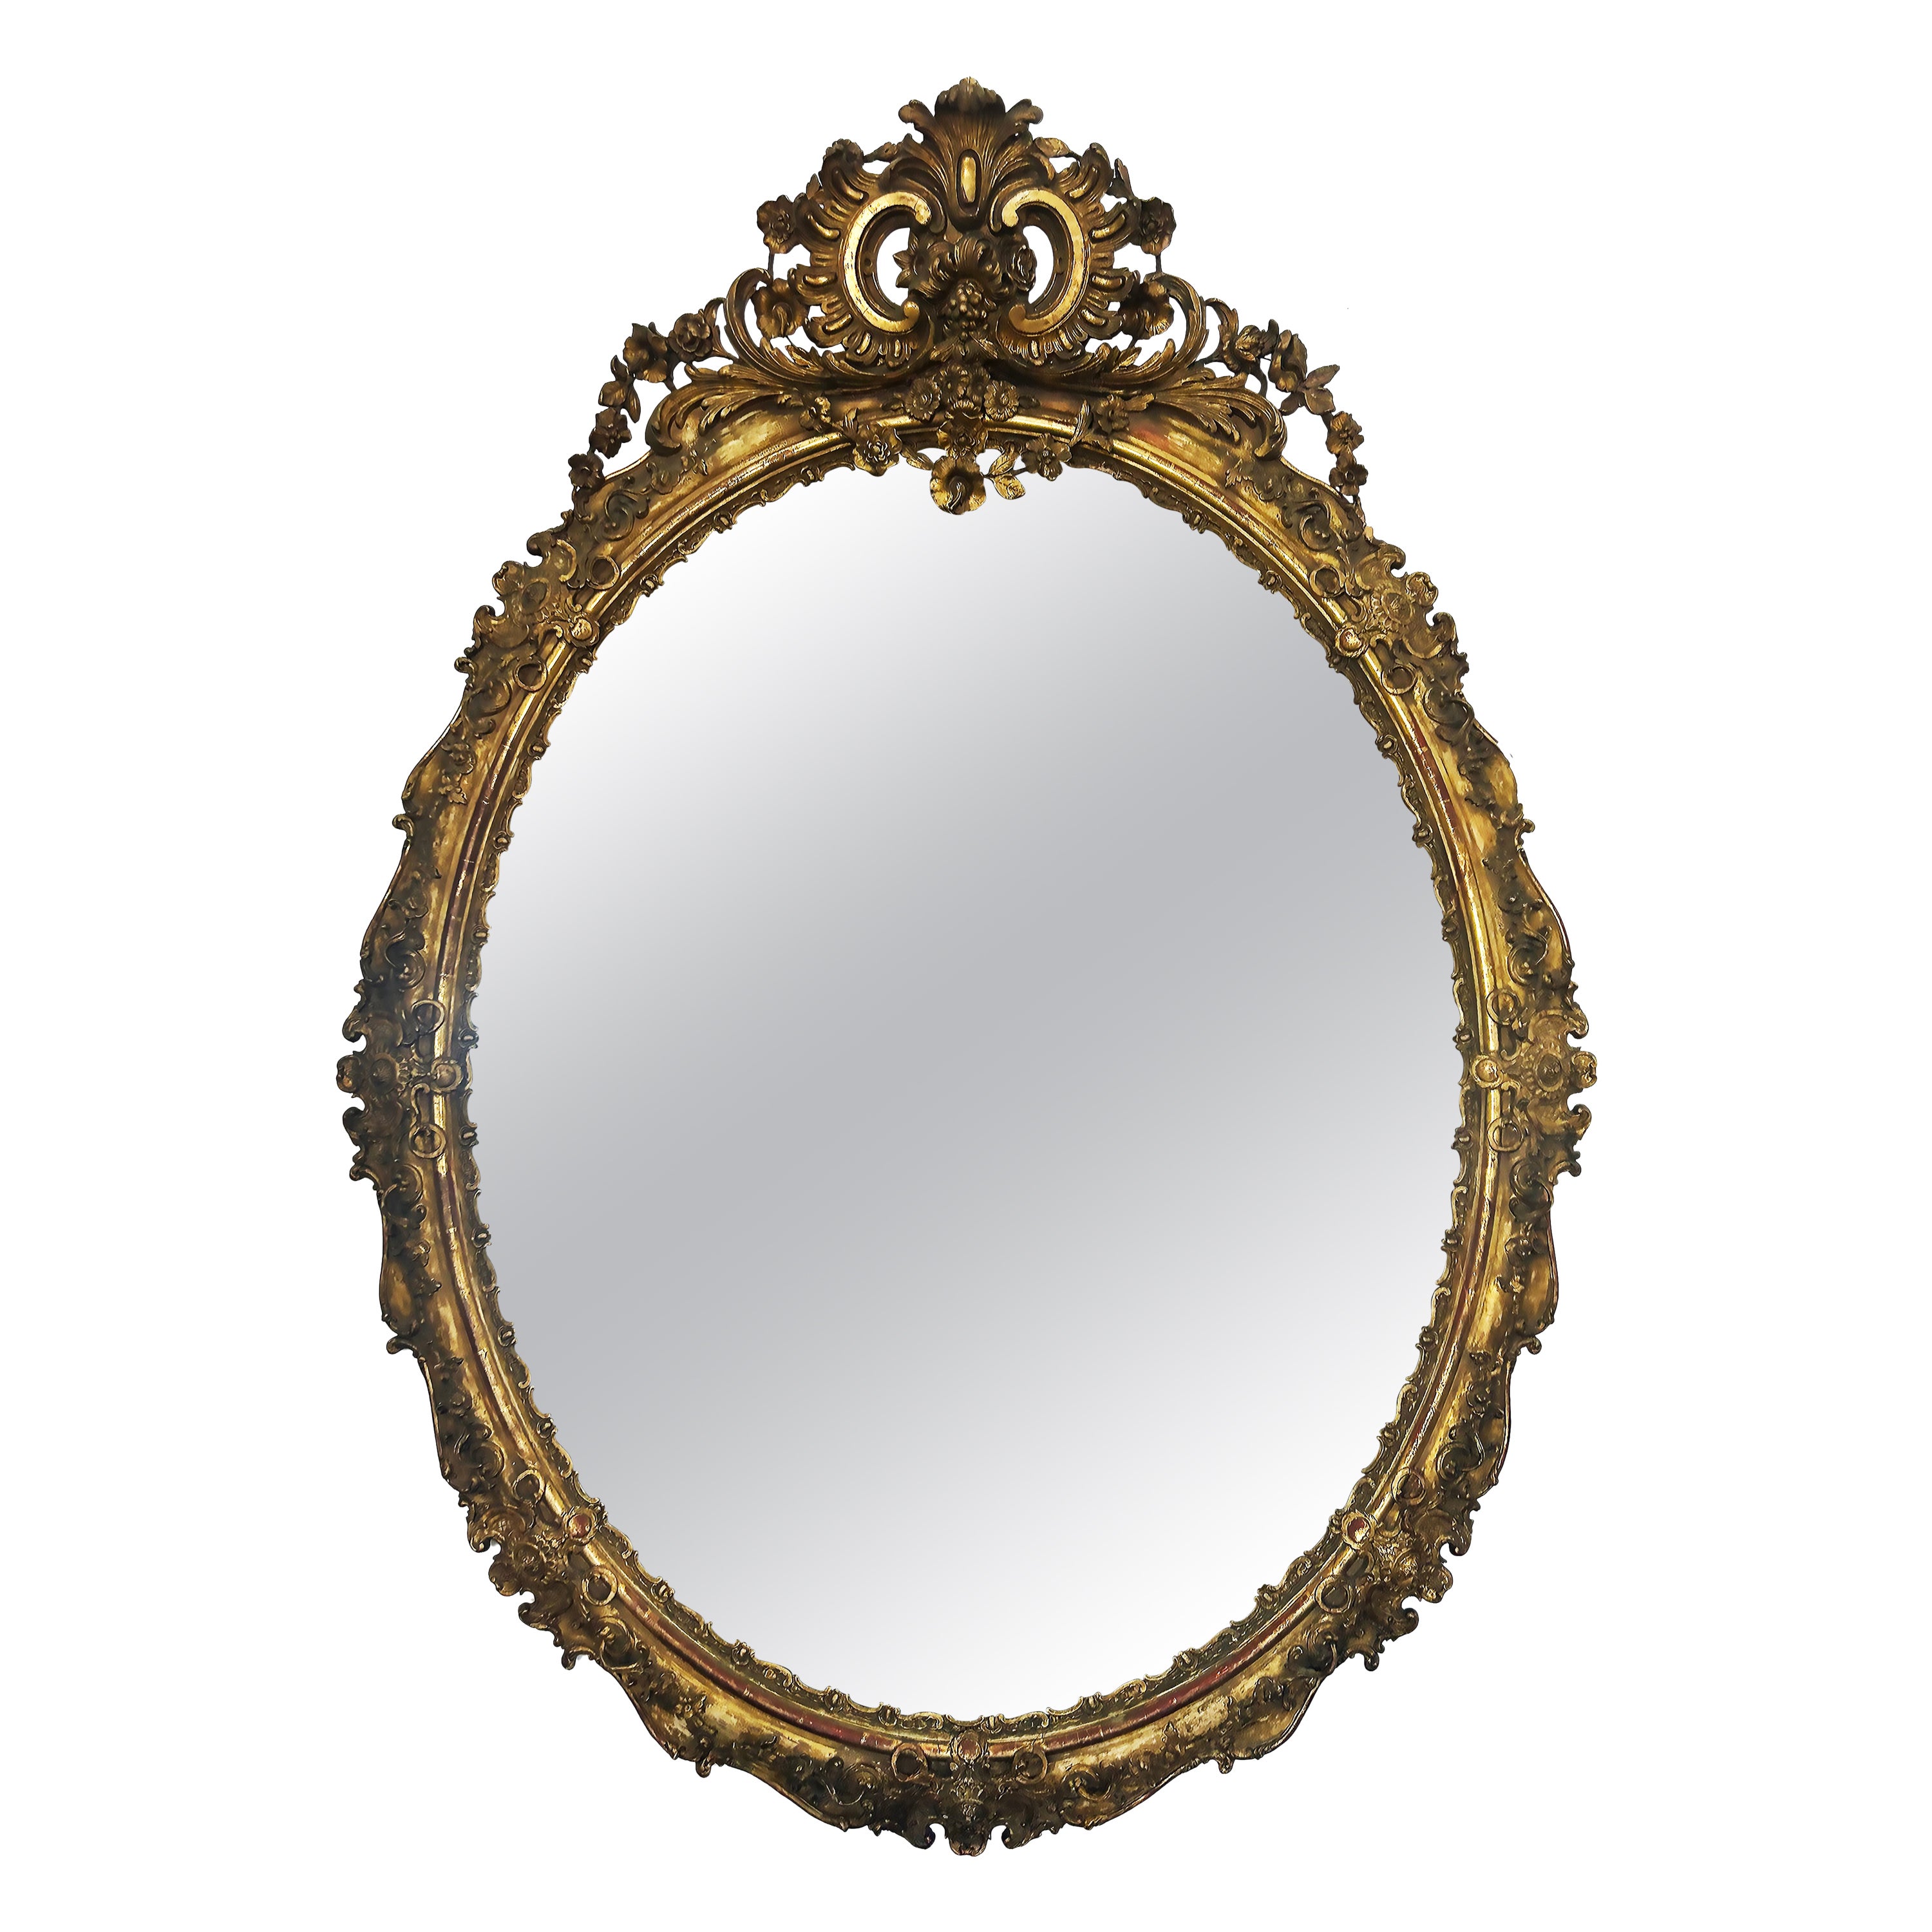 Monumental miroir européen ovale en bois doré et gesso, fin 19e-début 20e siècle